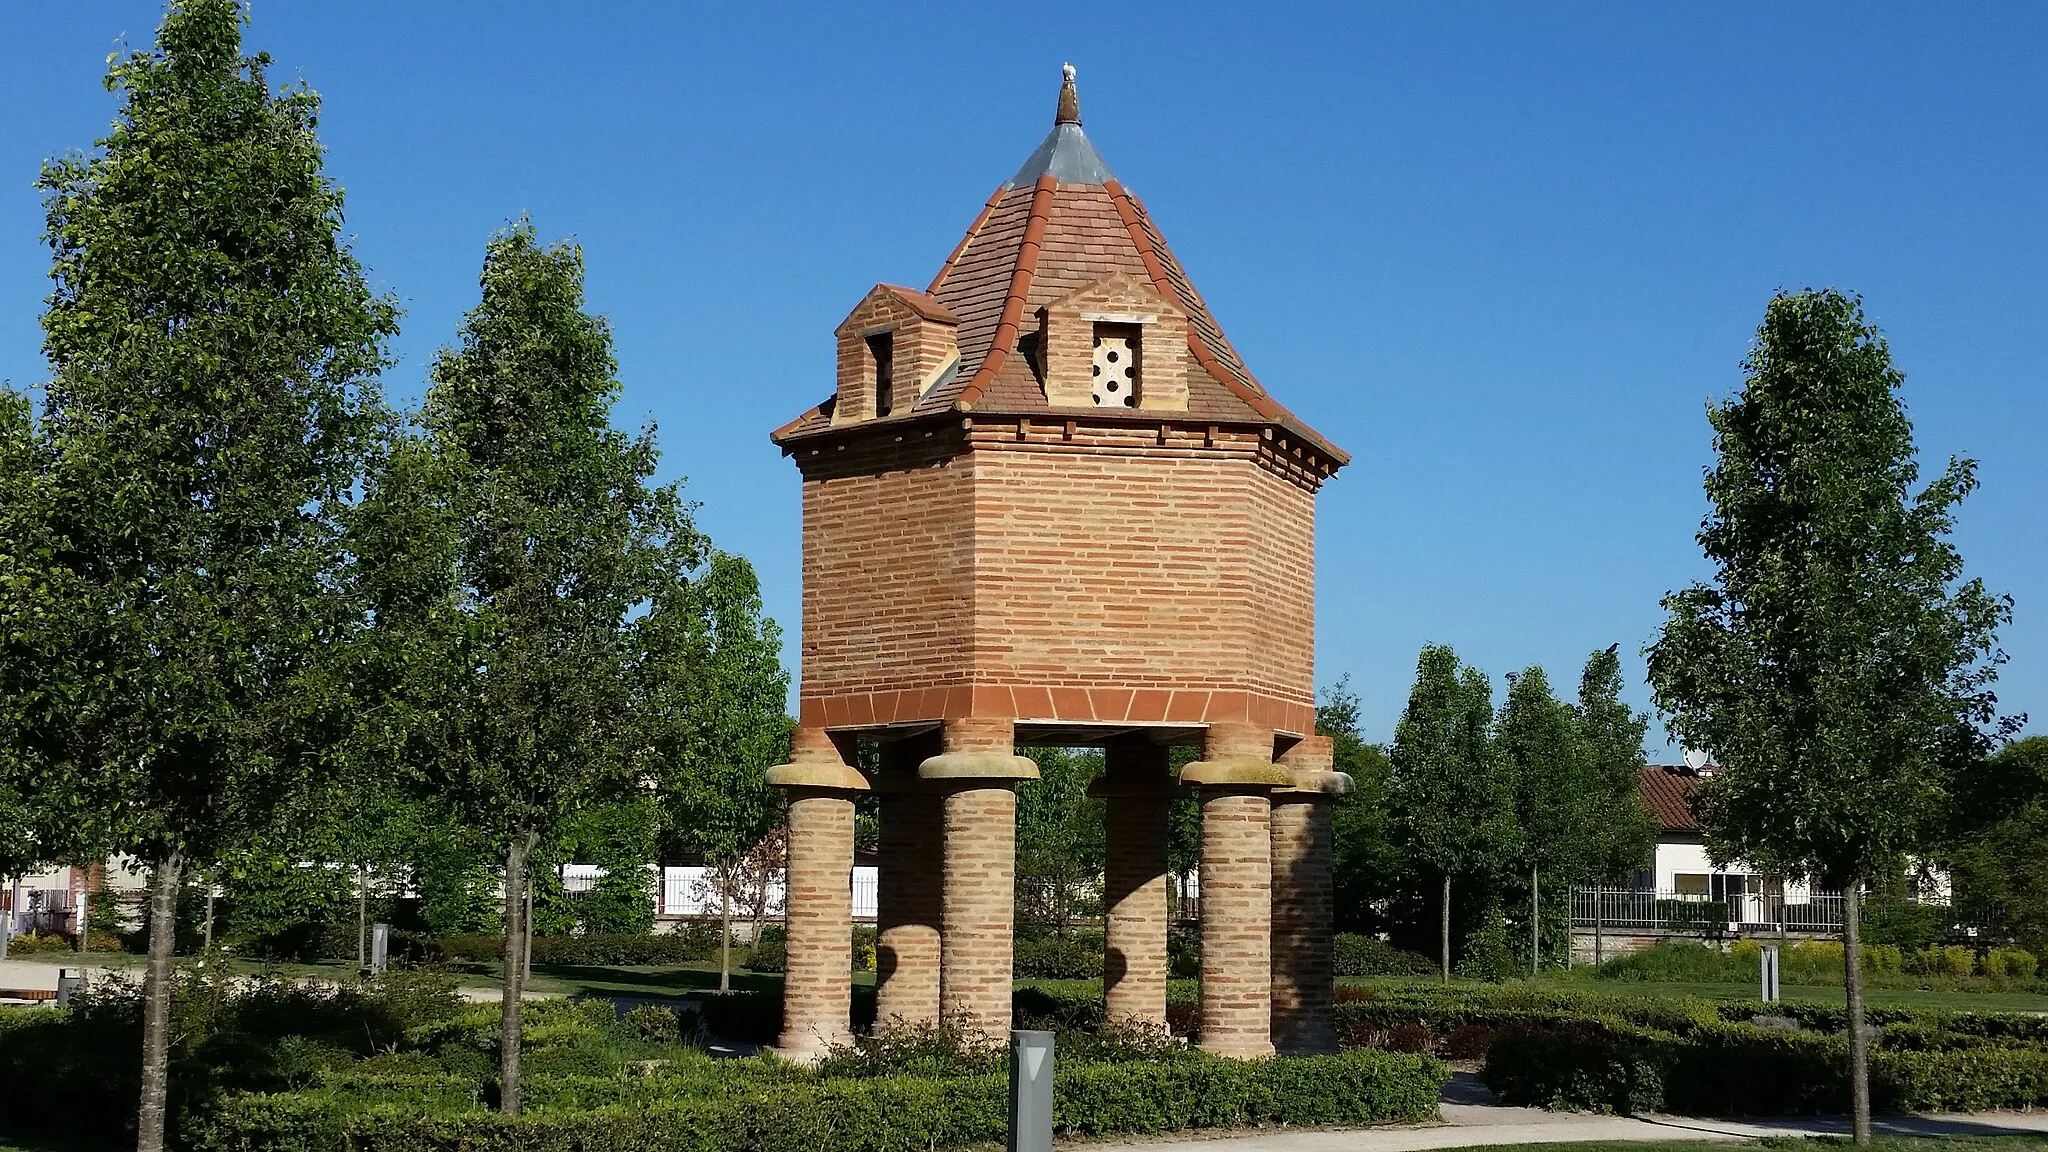 Photo showing: Frouzins city pigeon loft in the Saint-Germier park, built in 1670